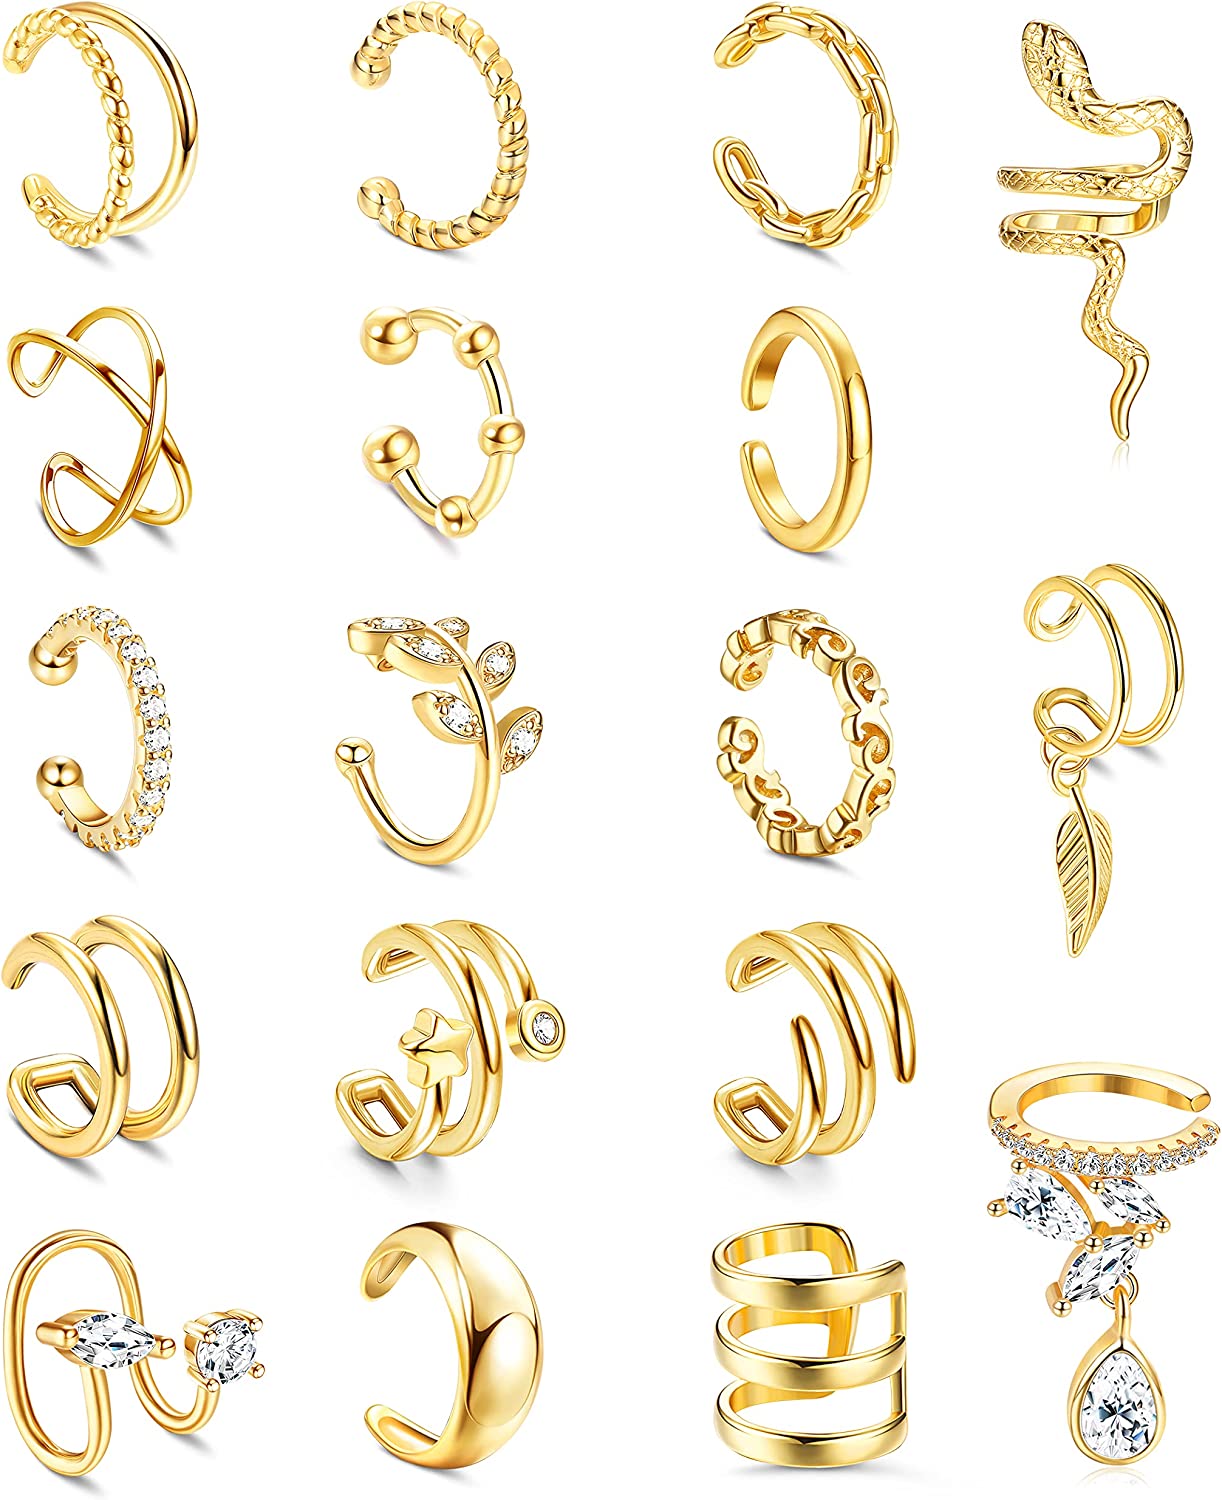 HAIAISO 18 Pcs Gold Ear Cuffs for Women Non Piercing Adjustable Ear Cuff Earrings Clip On Cartilage Helix Wrap Ear Jewelry Set